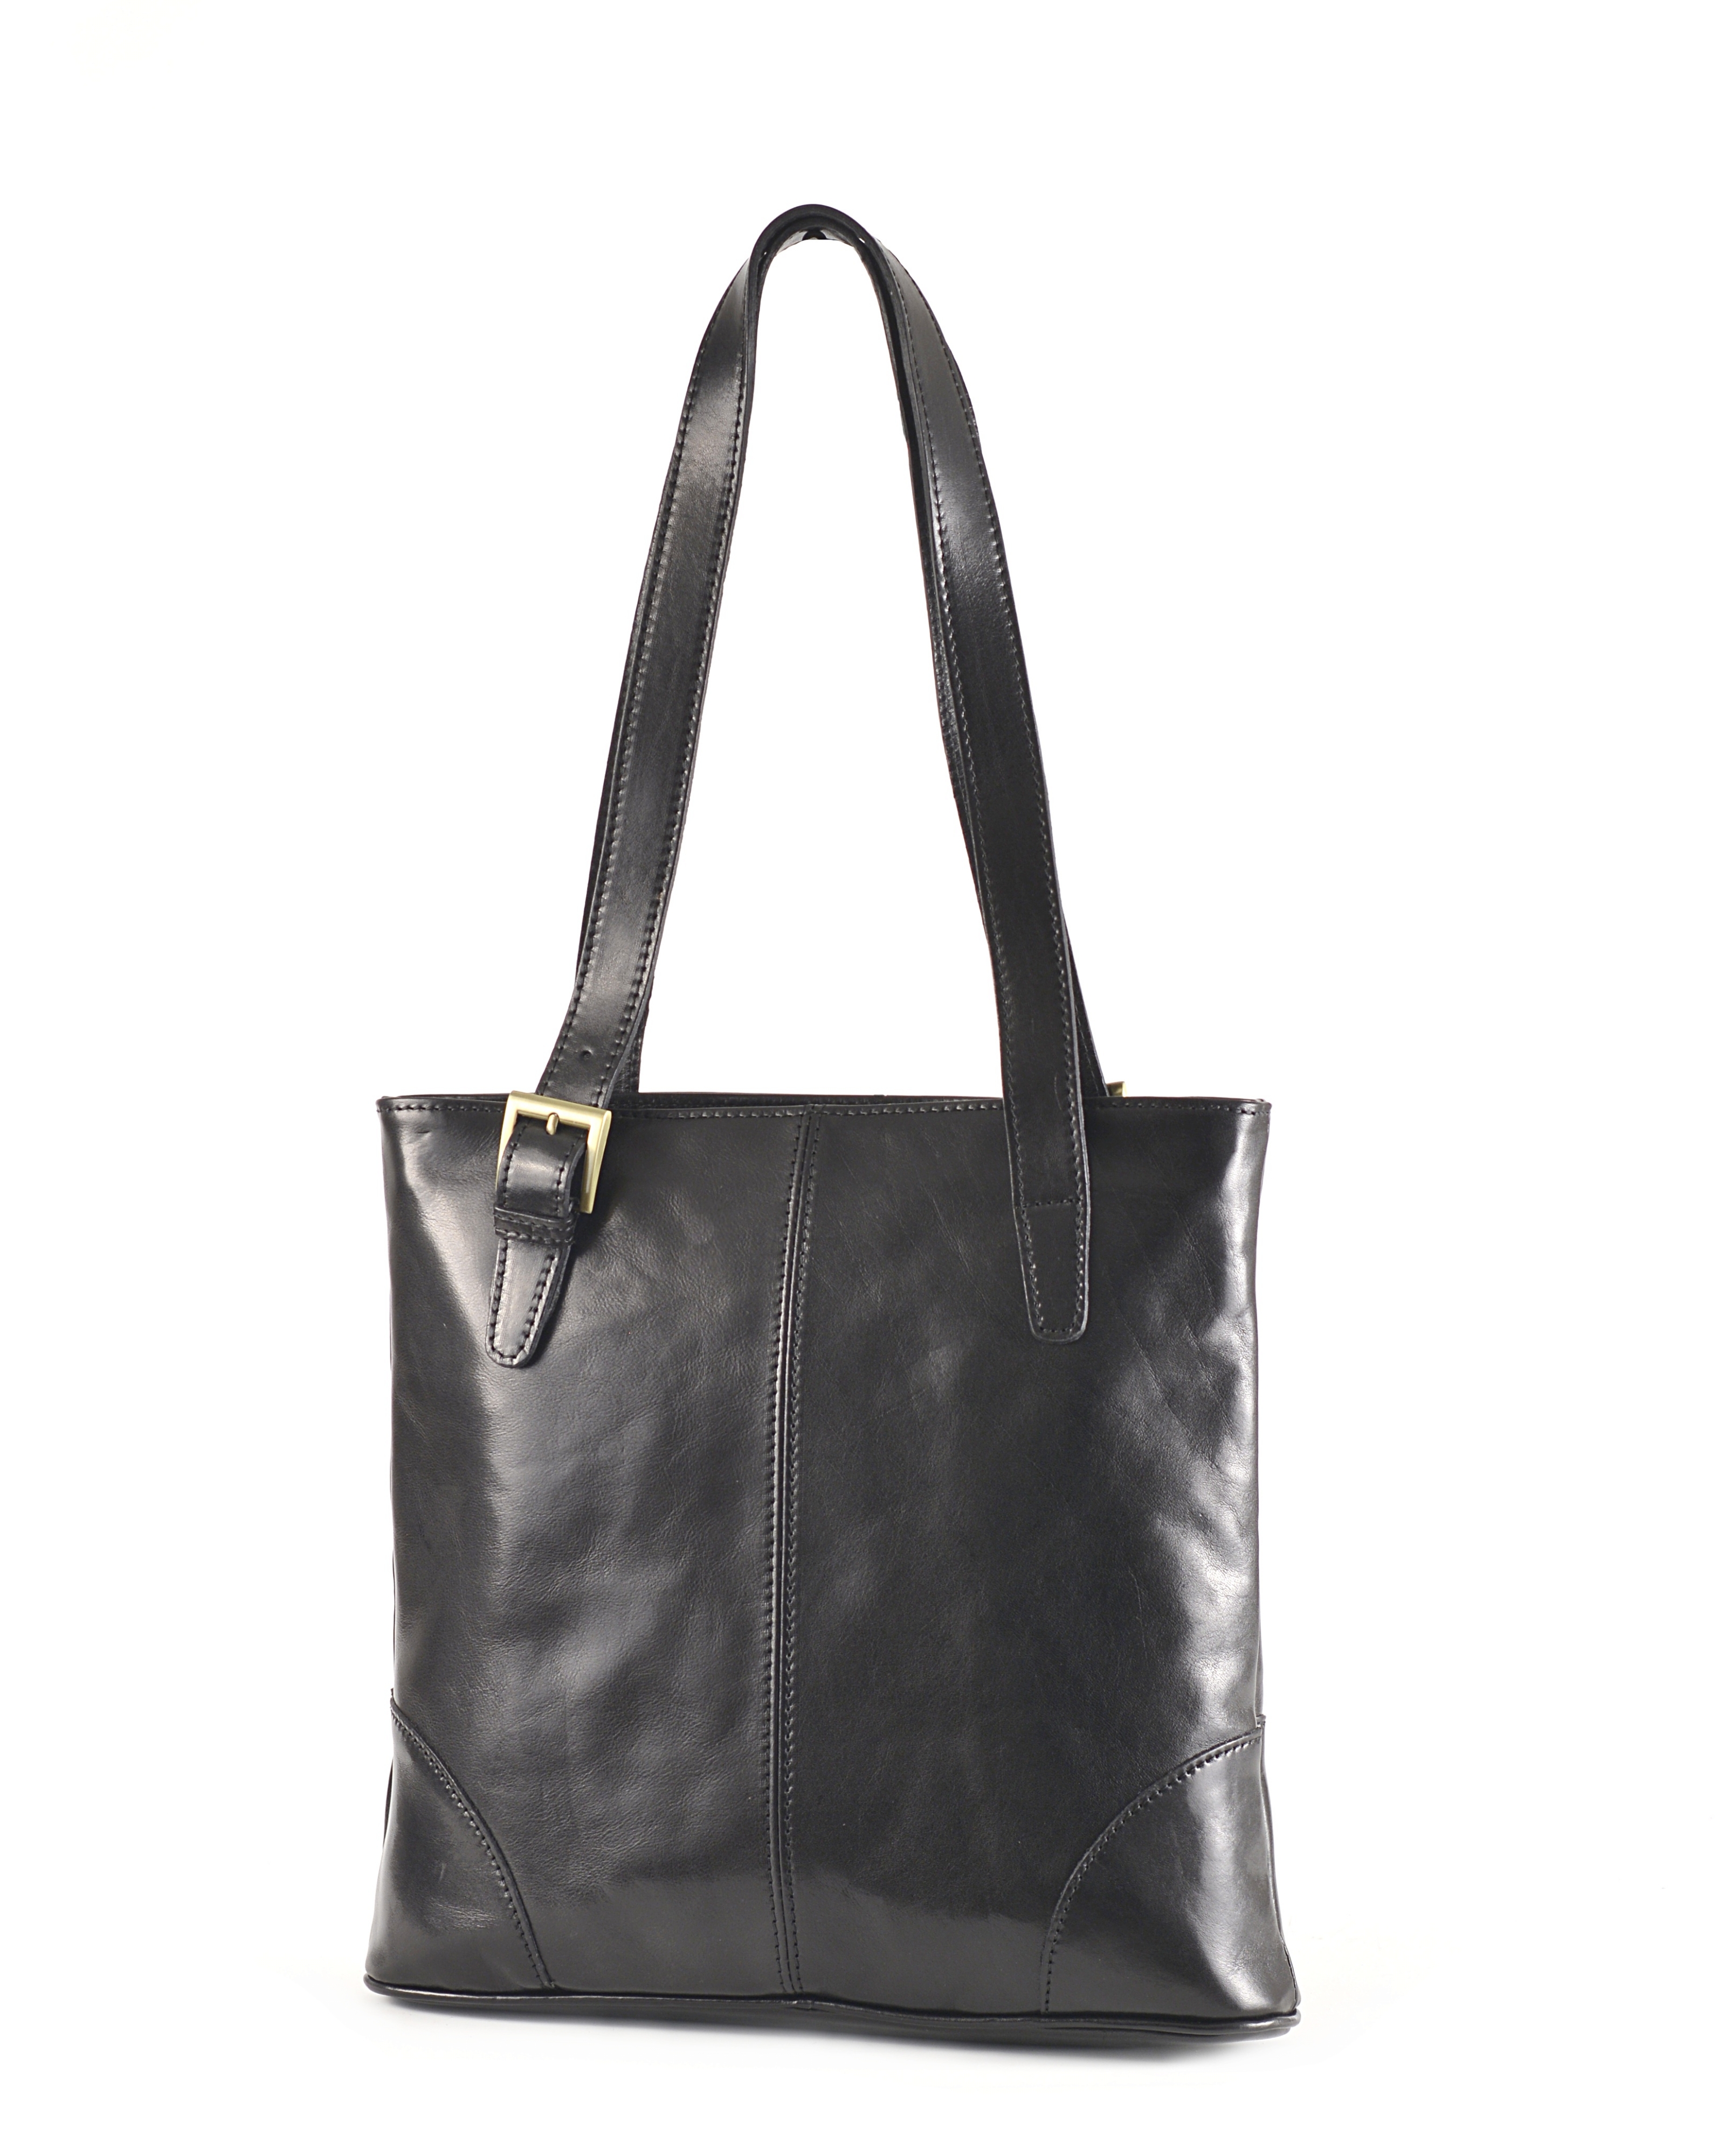 Kožená kabelka A4 přes rameno hladká černá, 34 x 8 x 35 (5536-09)